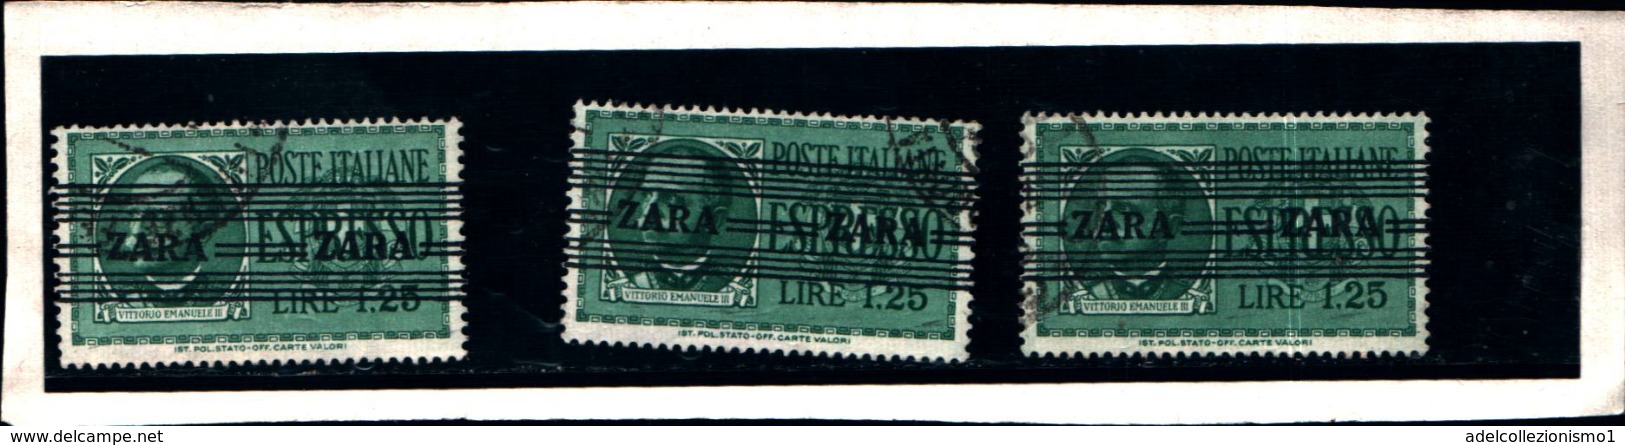 6949B) ITALIA- Zara, 1.25l. Sovrastampati Con Righe Orizzontali - ESPRESSI - 4 Novembre 1943-usato Un Pezzo - Deutsche Bes.: Zara